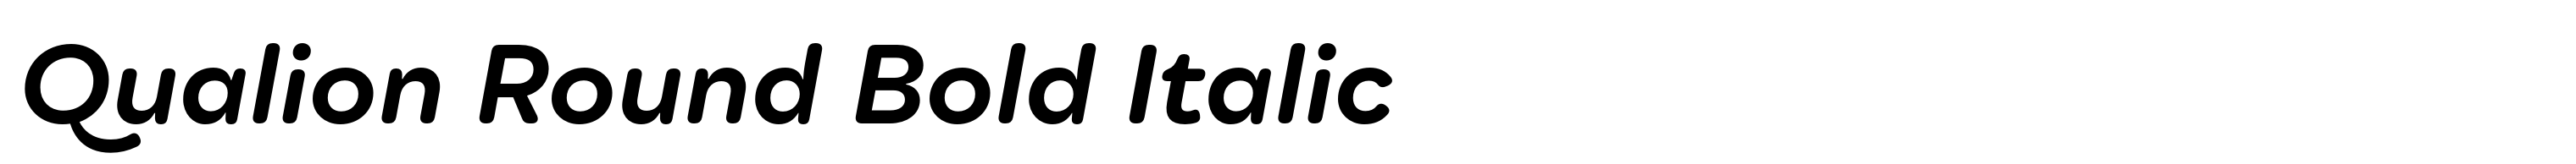 Qualion Round Bold Italic